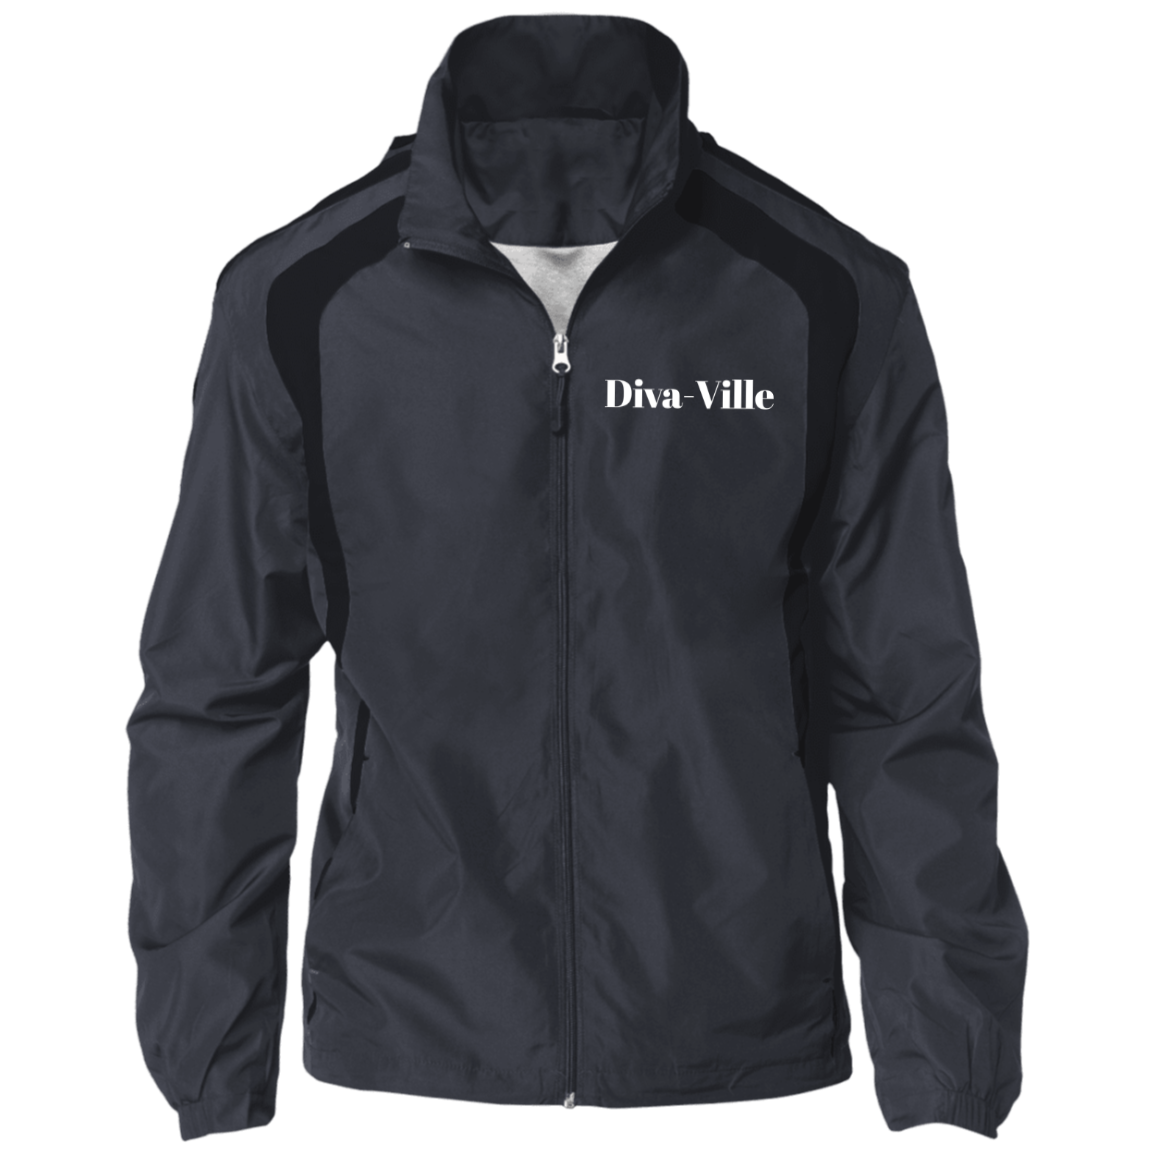 Diva Ville Jersey-Lined Jacket